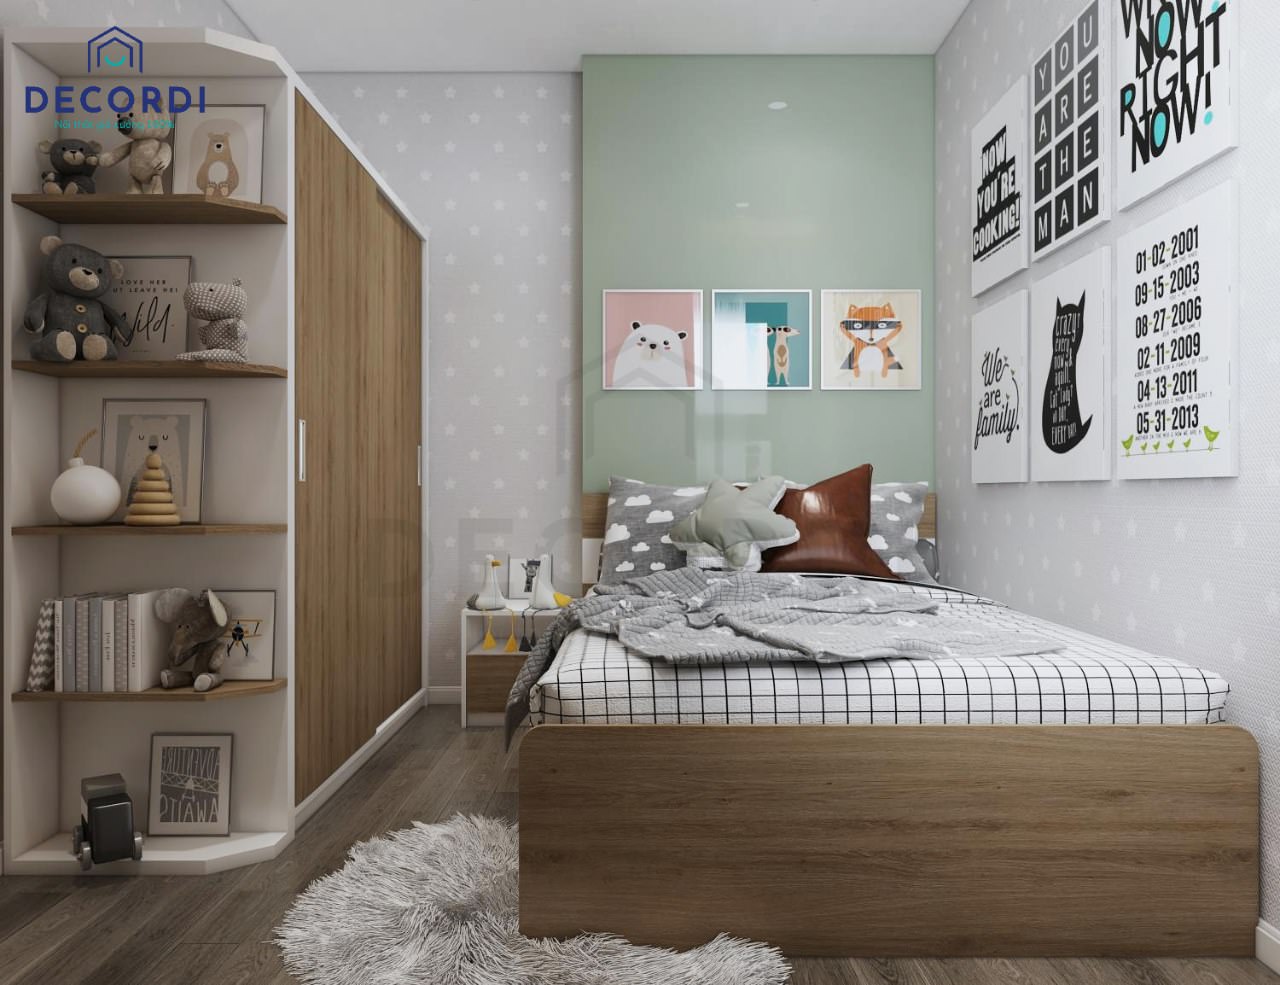 Thiết kế phòng ngủ nhỏ dành cho bé thật dễ thương với bộ nội thất gỗ phối cùng giấy dán tường độc đáo